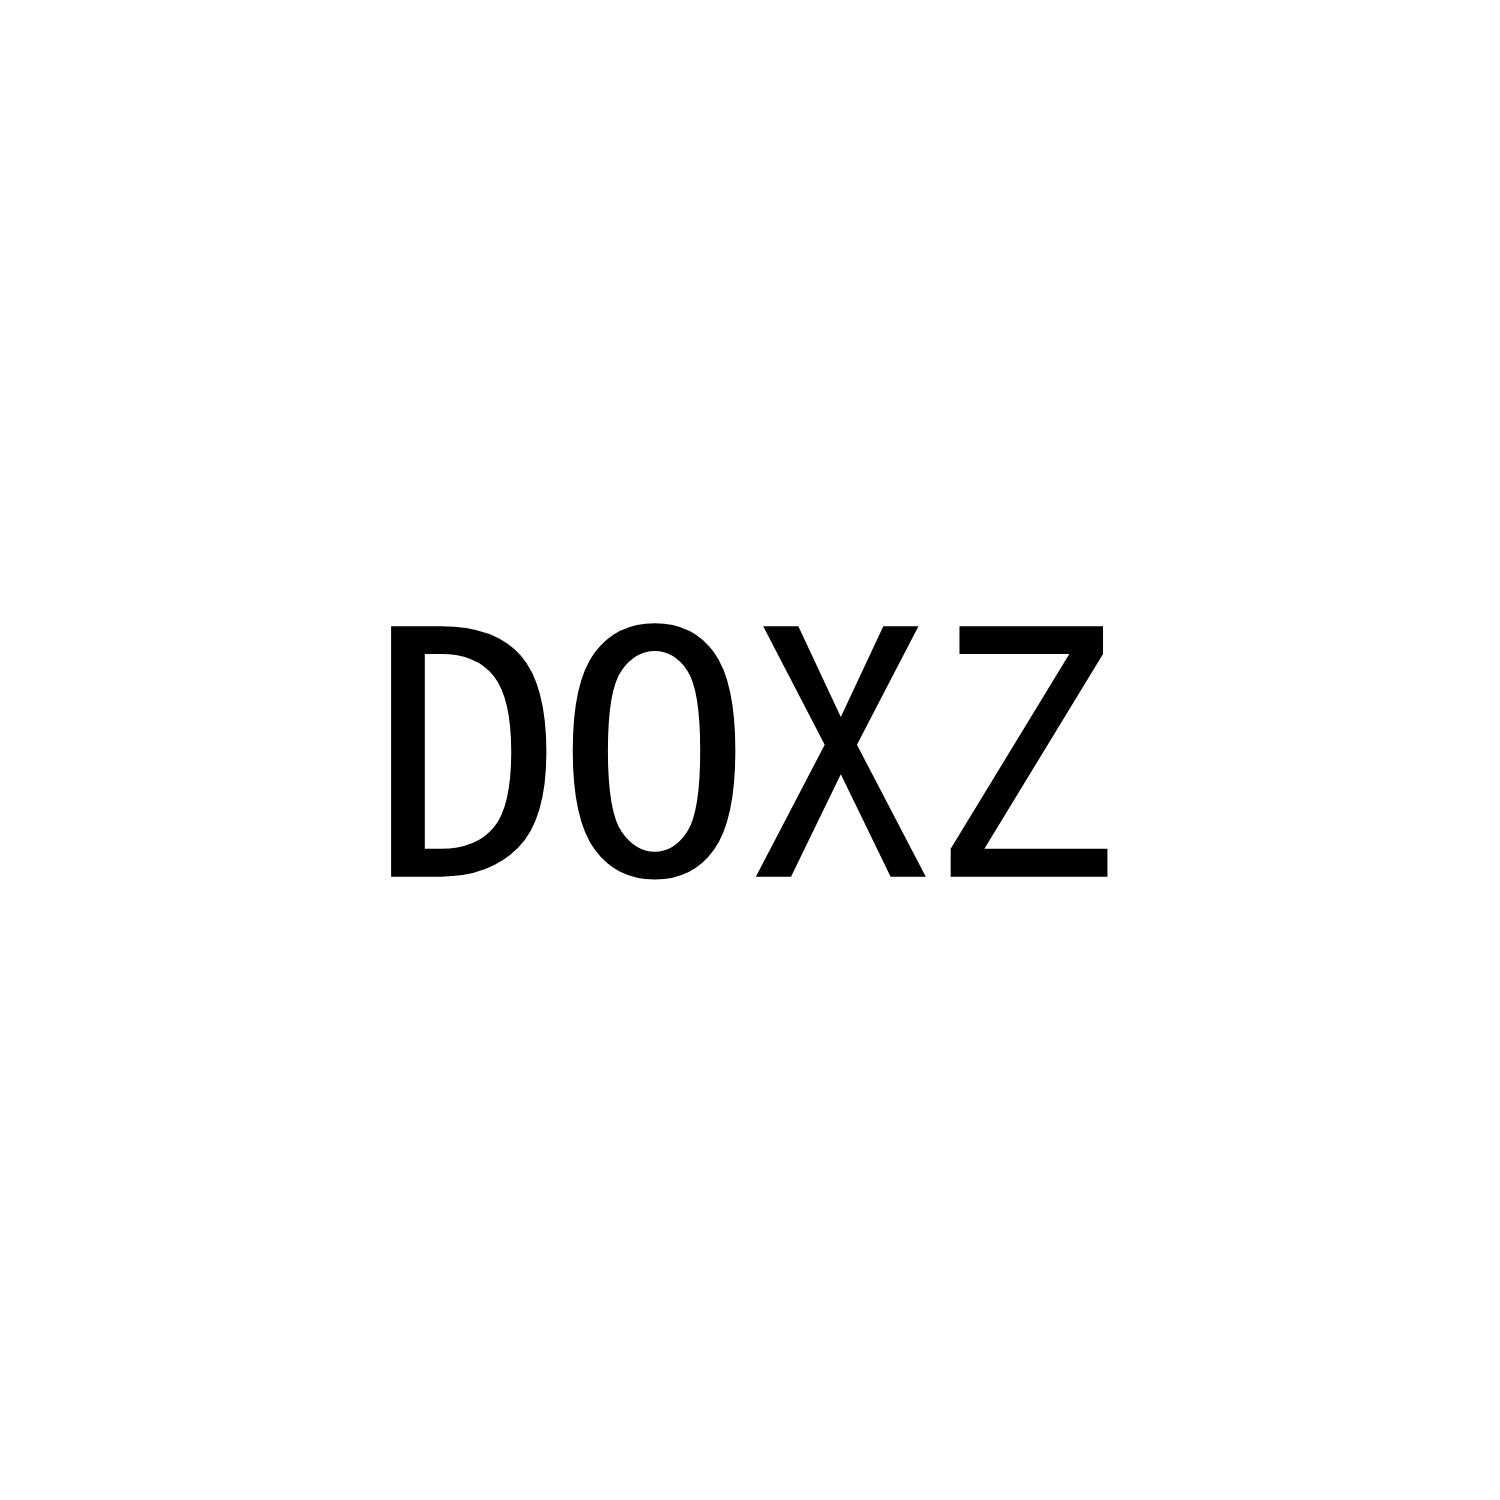 DOXZ